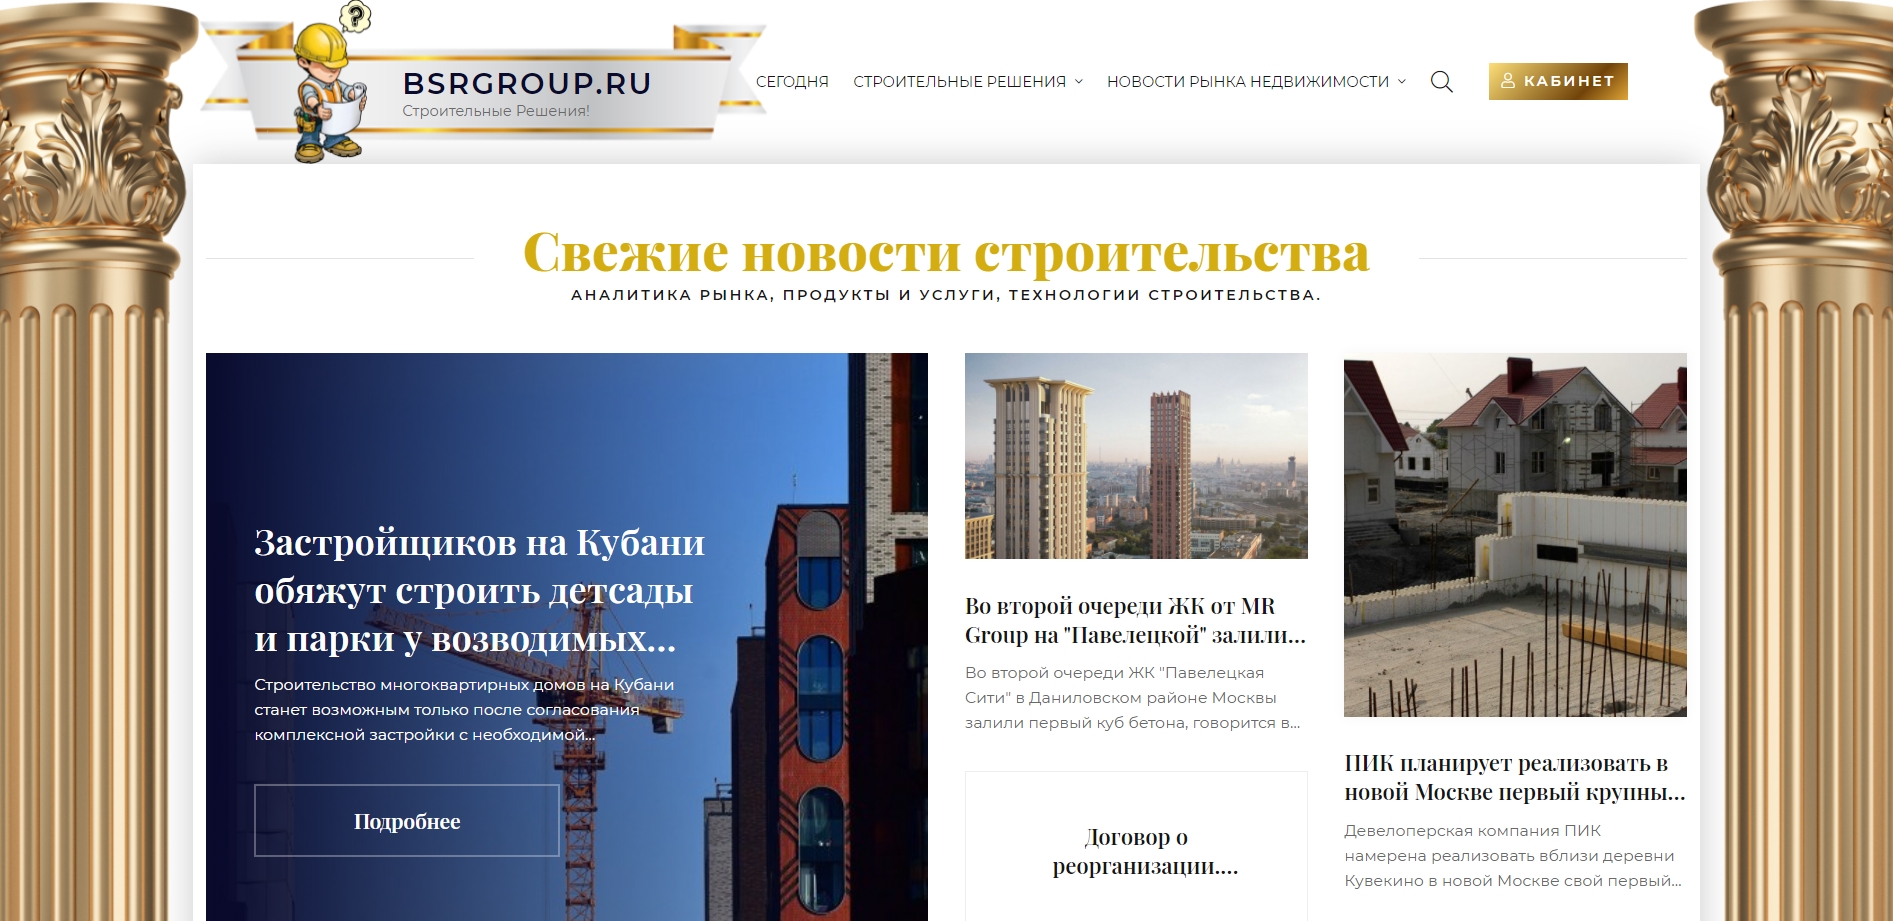 —троительные –ешени¤ - bsrgroup.ru